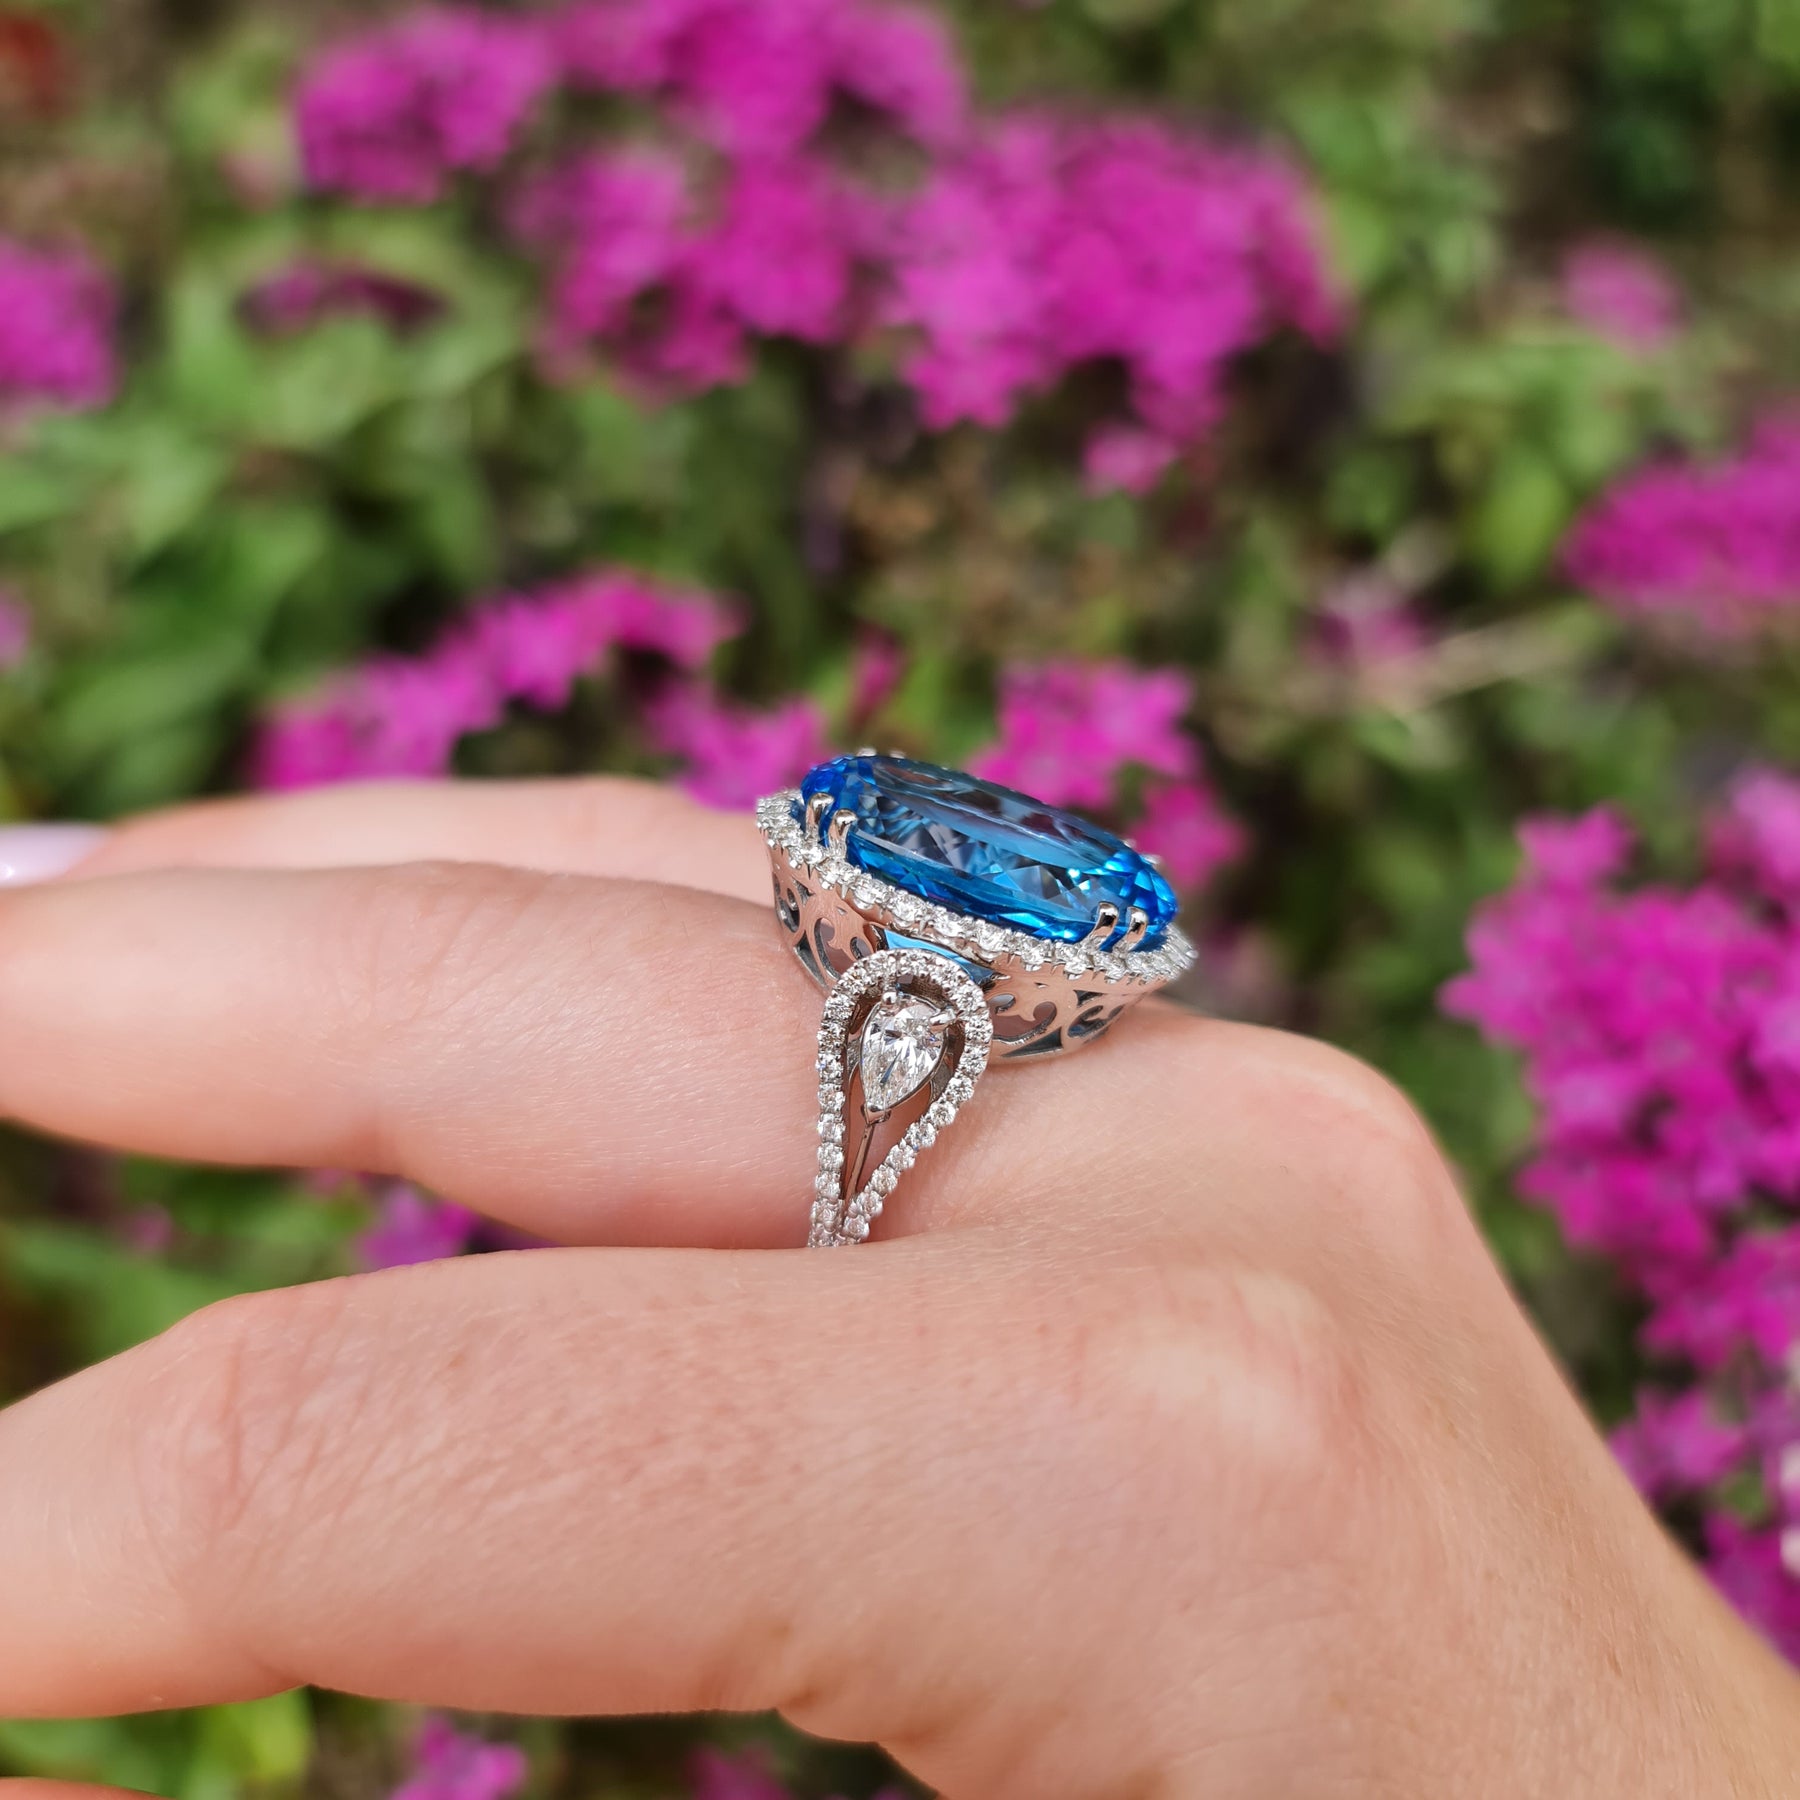 Natural London Blue Topaz Gemstone 18k White Gold Ring For Men's #239 | eBay